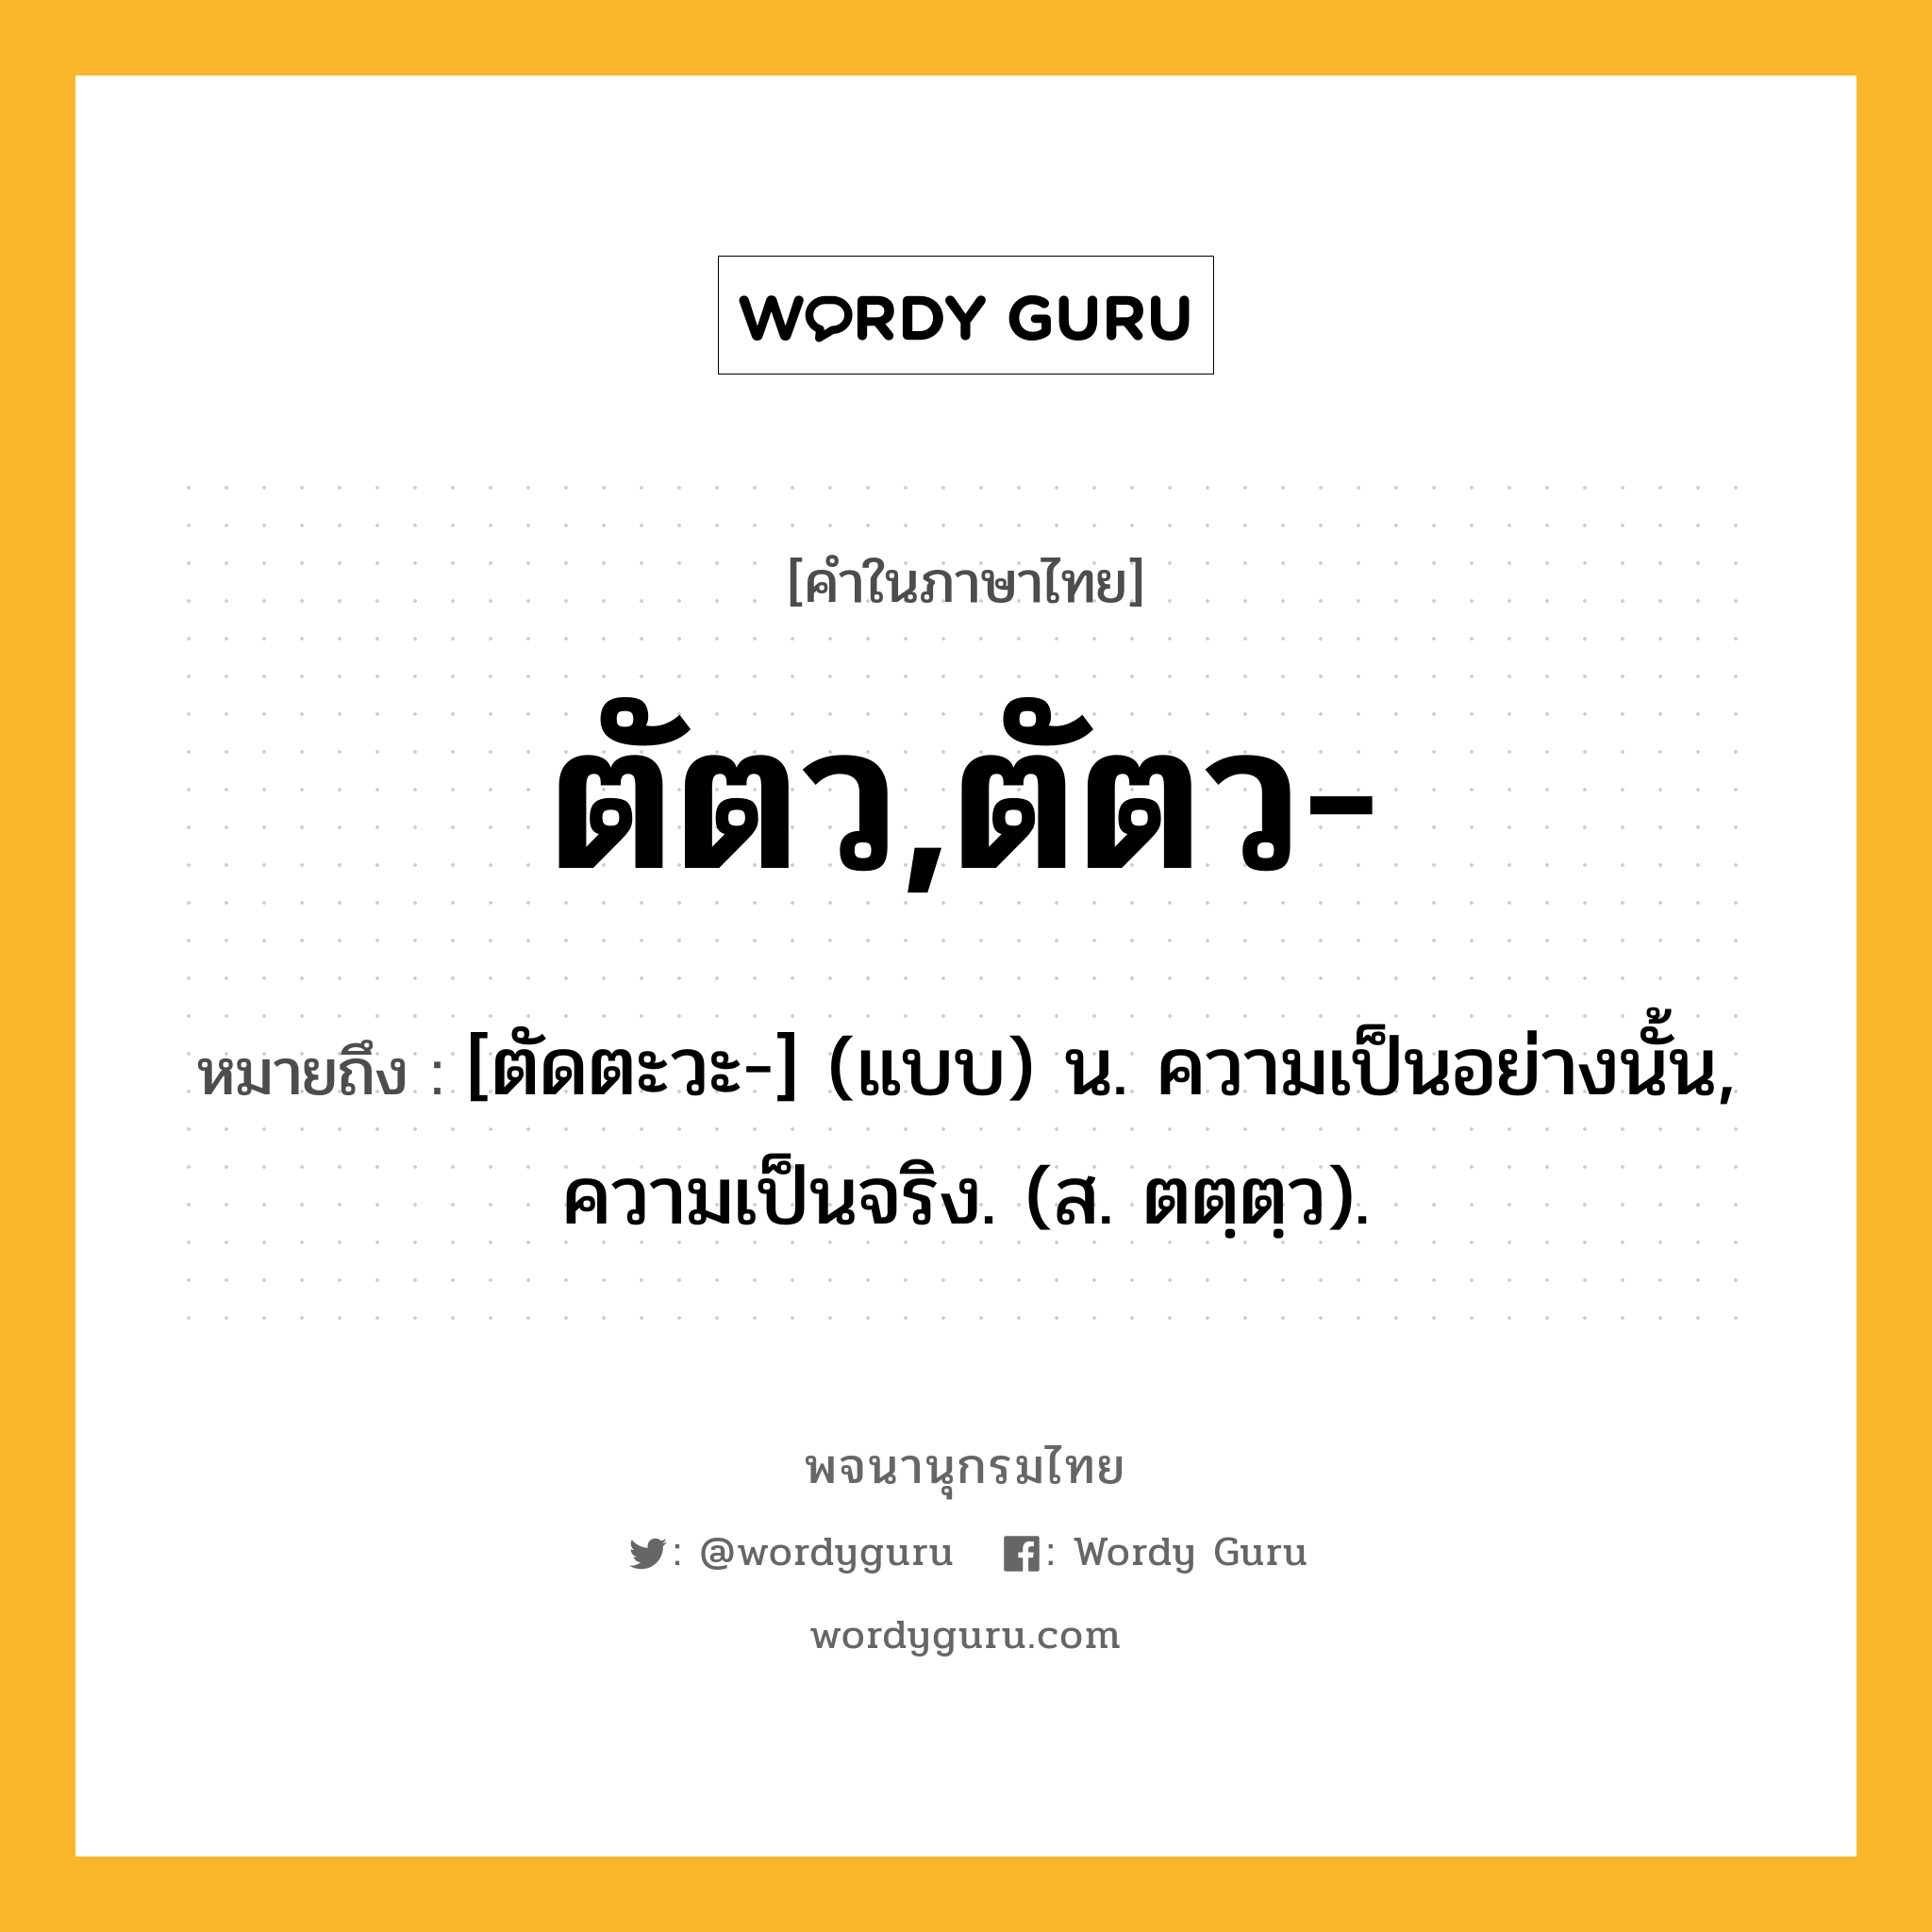 ตัตว,ตัตว- หมายถึงอะไร?, คำในภาษาไทย ตัตว,ตัตว- หมายถึง [ตัดตะวะ-] (แบบ) น. ความเป็นอย่างนั้น, ความเป็นจริง. (ส. ตตฺตฺว).